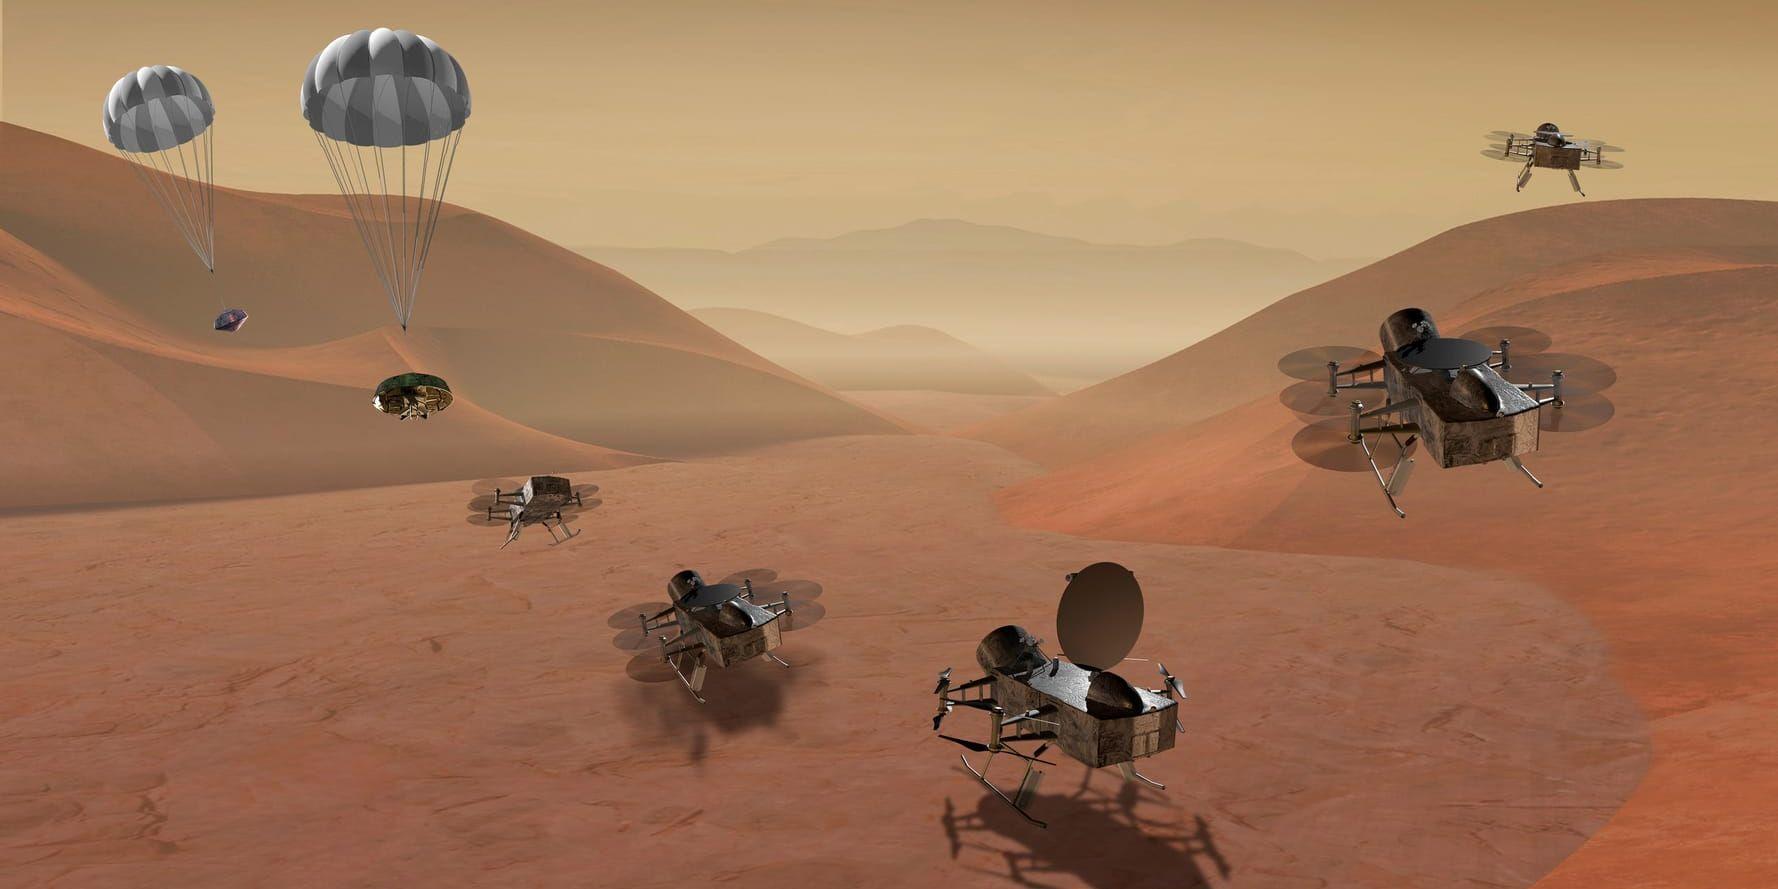 En illustration av hur Nasas drönarlika robot ska kunna landa och sedan flyga vidare på Titan. Bilden har tagits fram av en illustratör och distribuerats av Nasa.